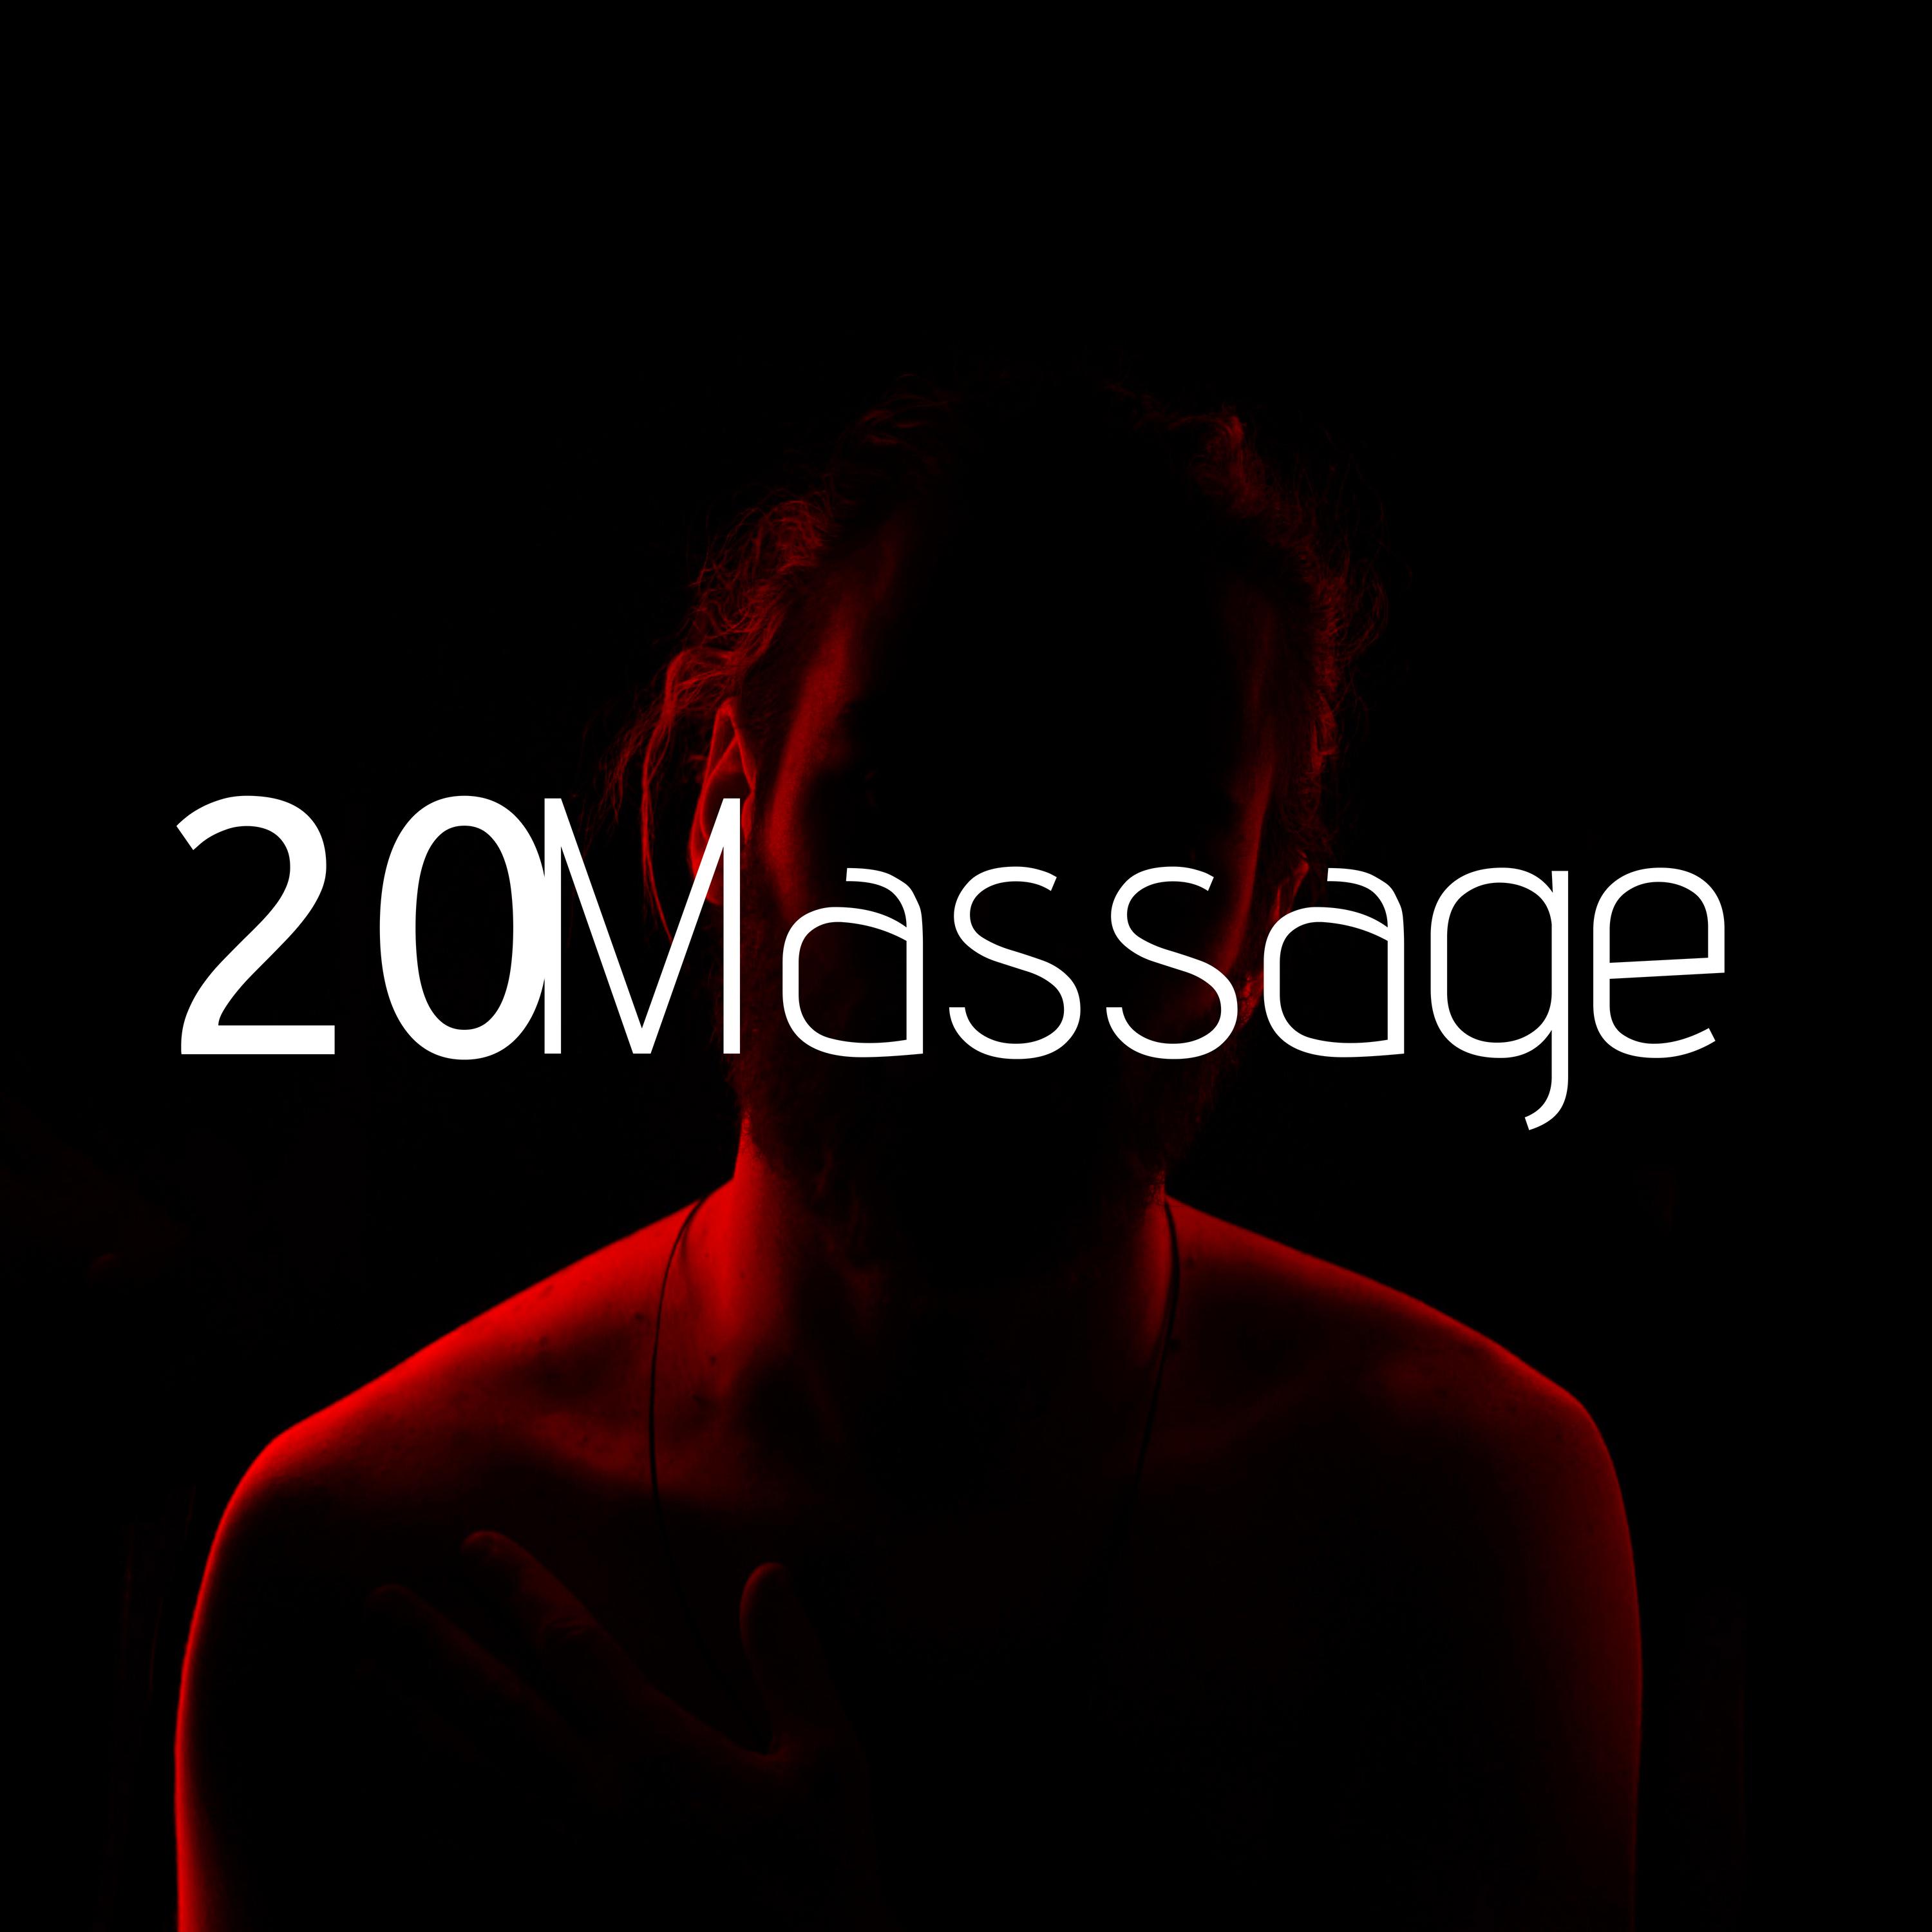 20 Massage - Een massage geeft je namelijk meer energie, verbetert de doorbloeding, verminderd stress, het verwijdert afvalstoffen en zorgt voor een betere ademhaling